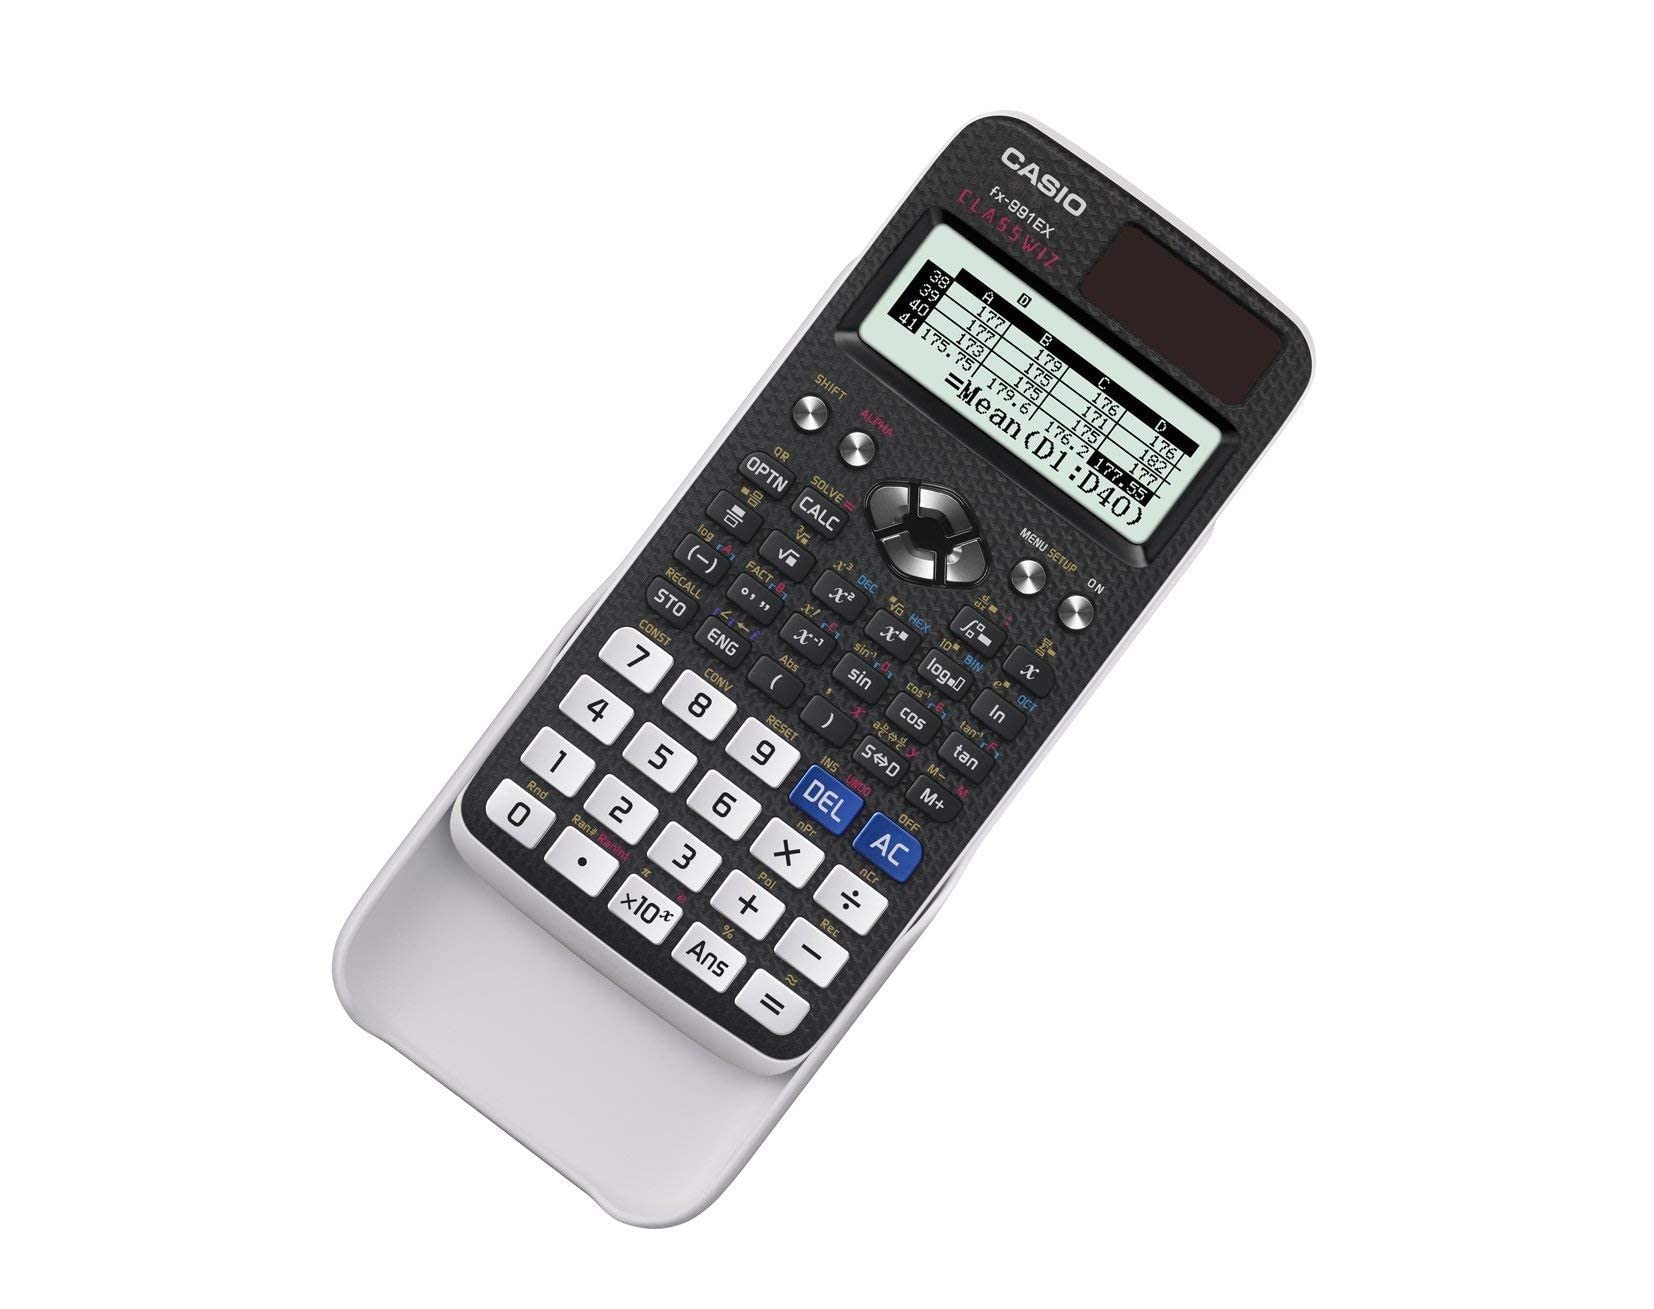 CASIO FX-991EX Advanced Engineering/Scientific Calculator (UK VERSION), Black